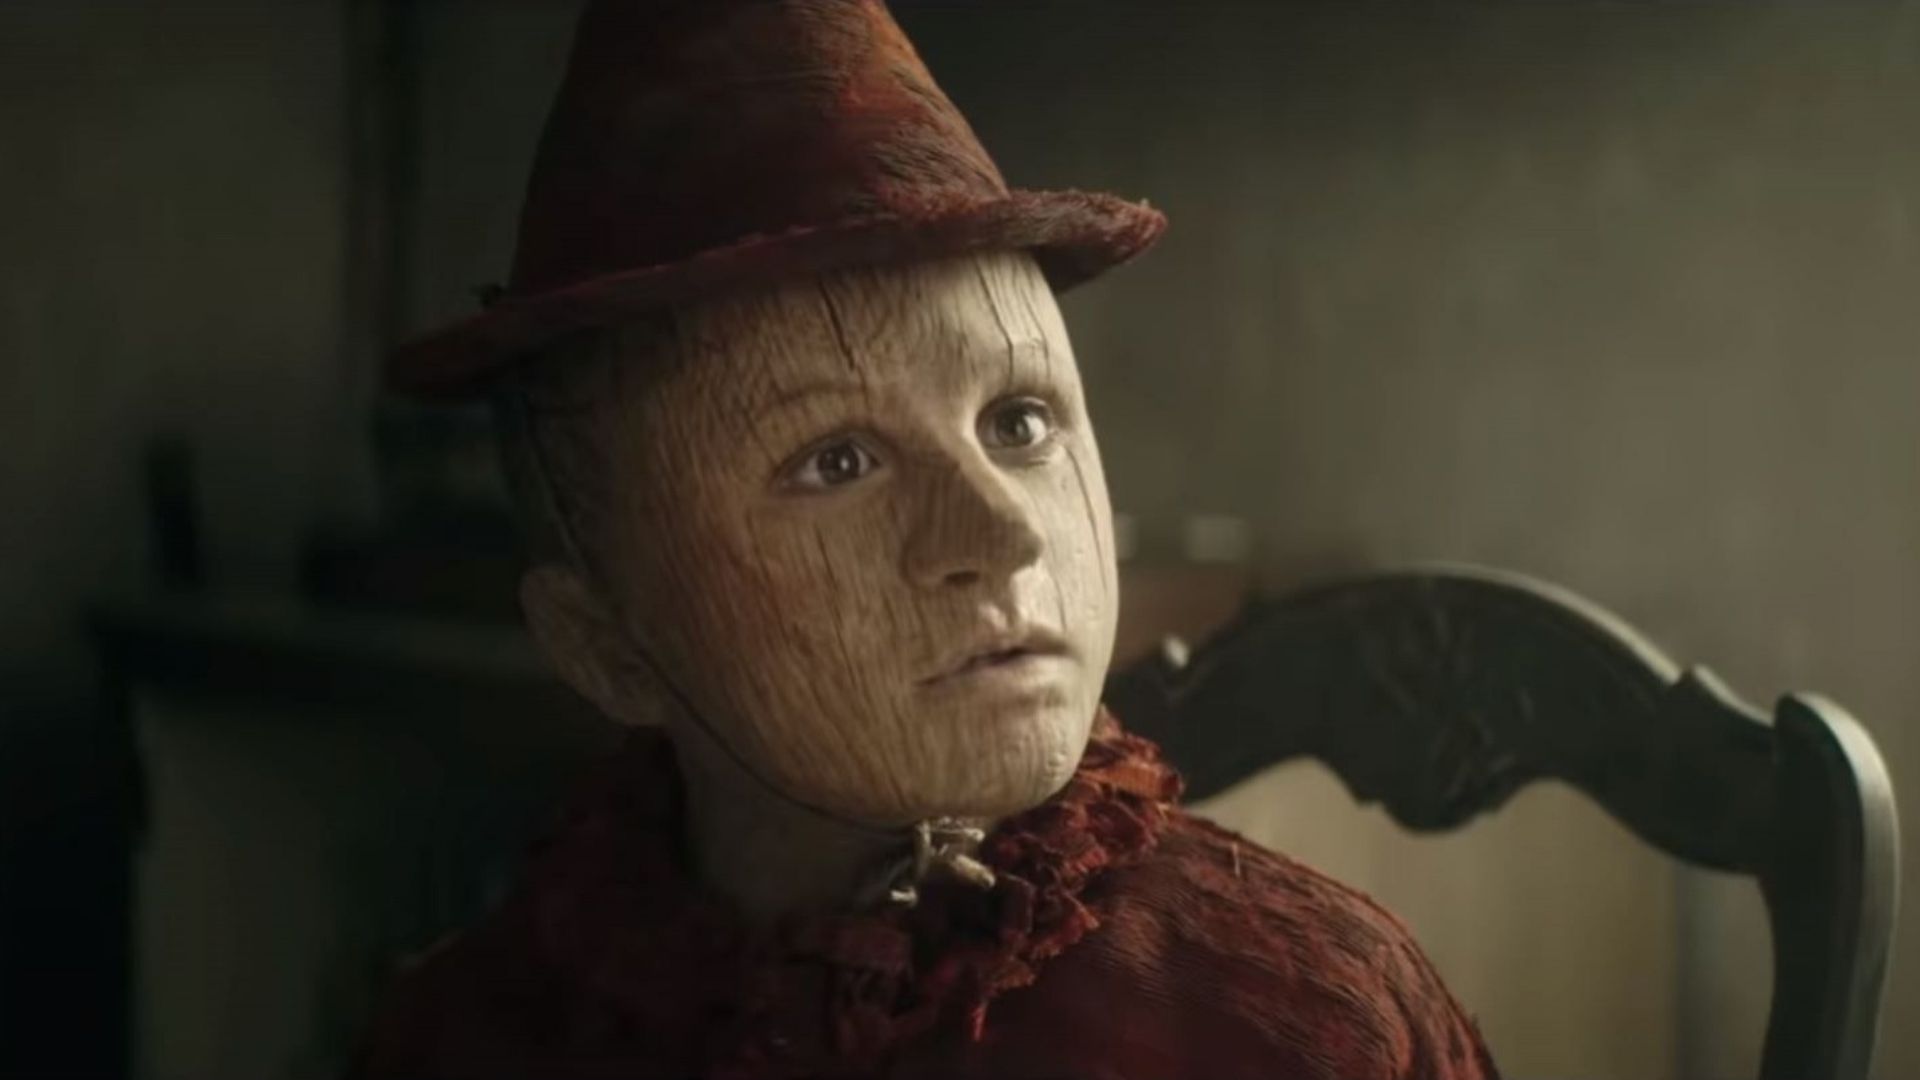 Matteo Garrone a imaginé un univers féérique pour porter à l'écran "Pinocchio", présenté dimanche à la Berlinale.